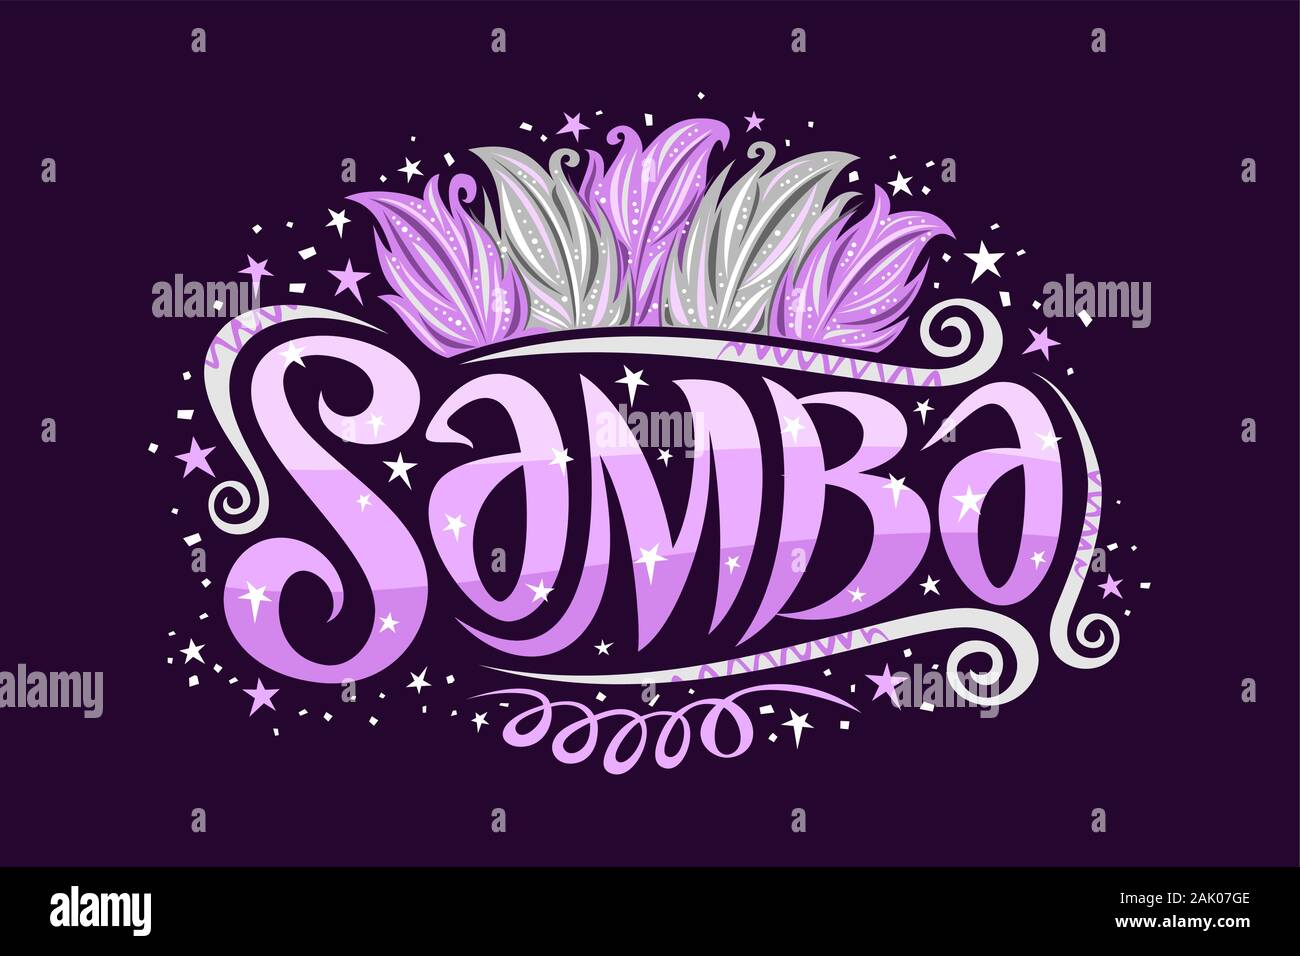 Logo Vector pour Samba brésilienne, decorative sign board pour l'école de samba avec illustration de violet et argent les plumes des oiseaux, les boucles et les étoiles, trio Illustration de Vecteur